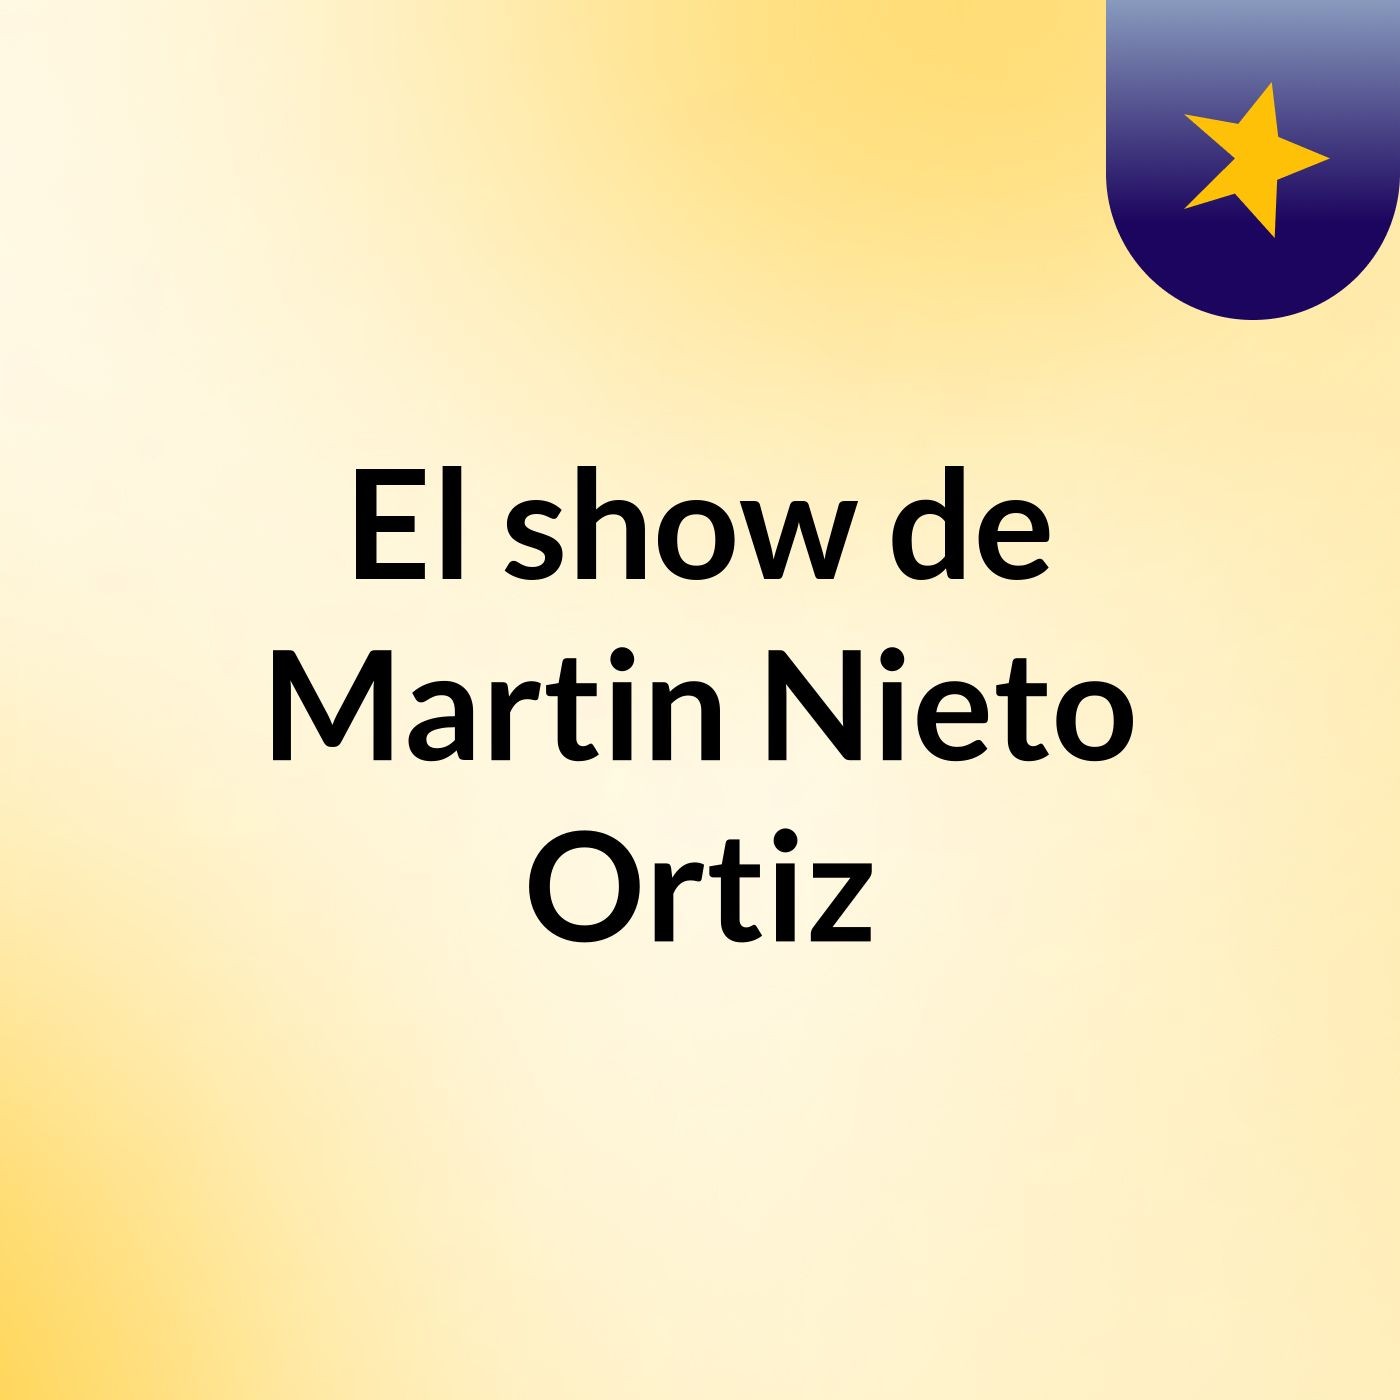 El show de Martin Nieto Ortiz